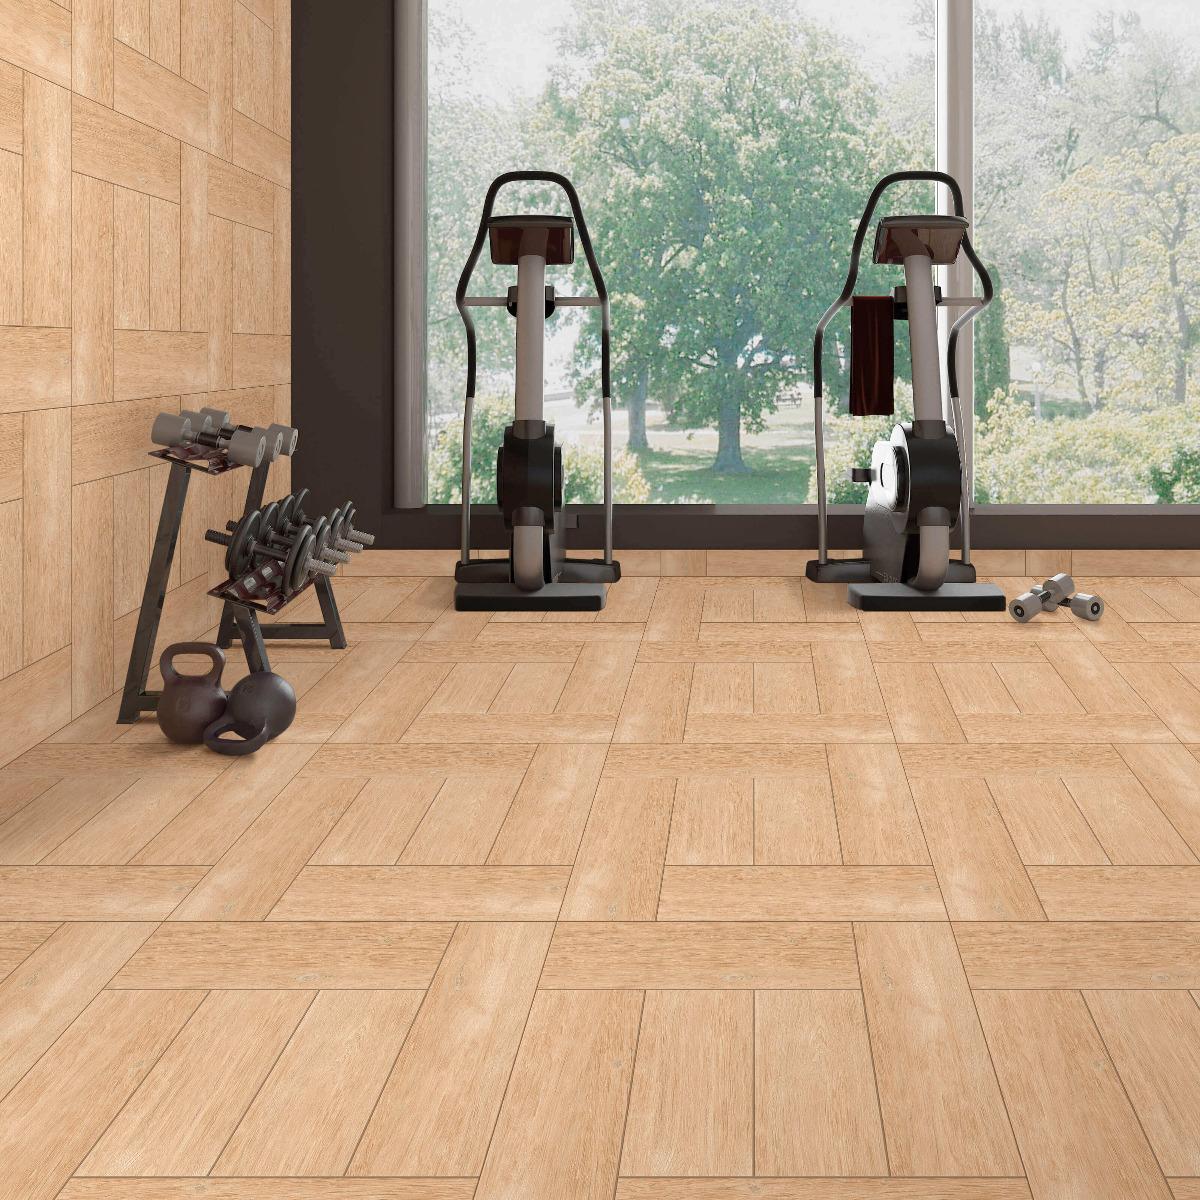 BDM Swanwood Brown Gym Area Wooden Floor Tiles